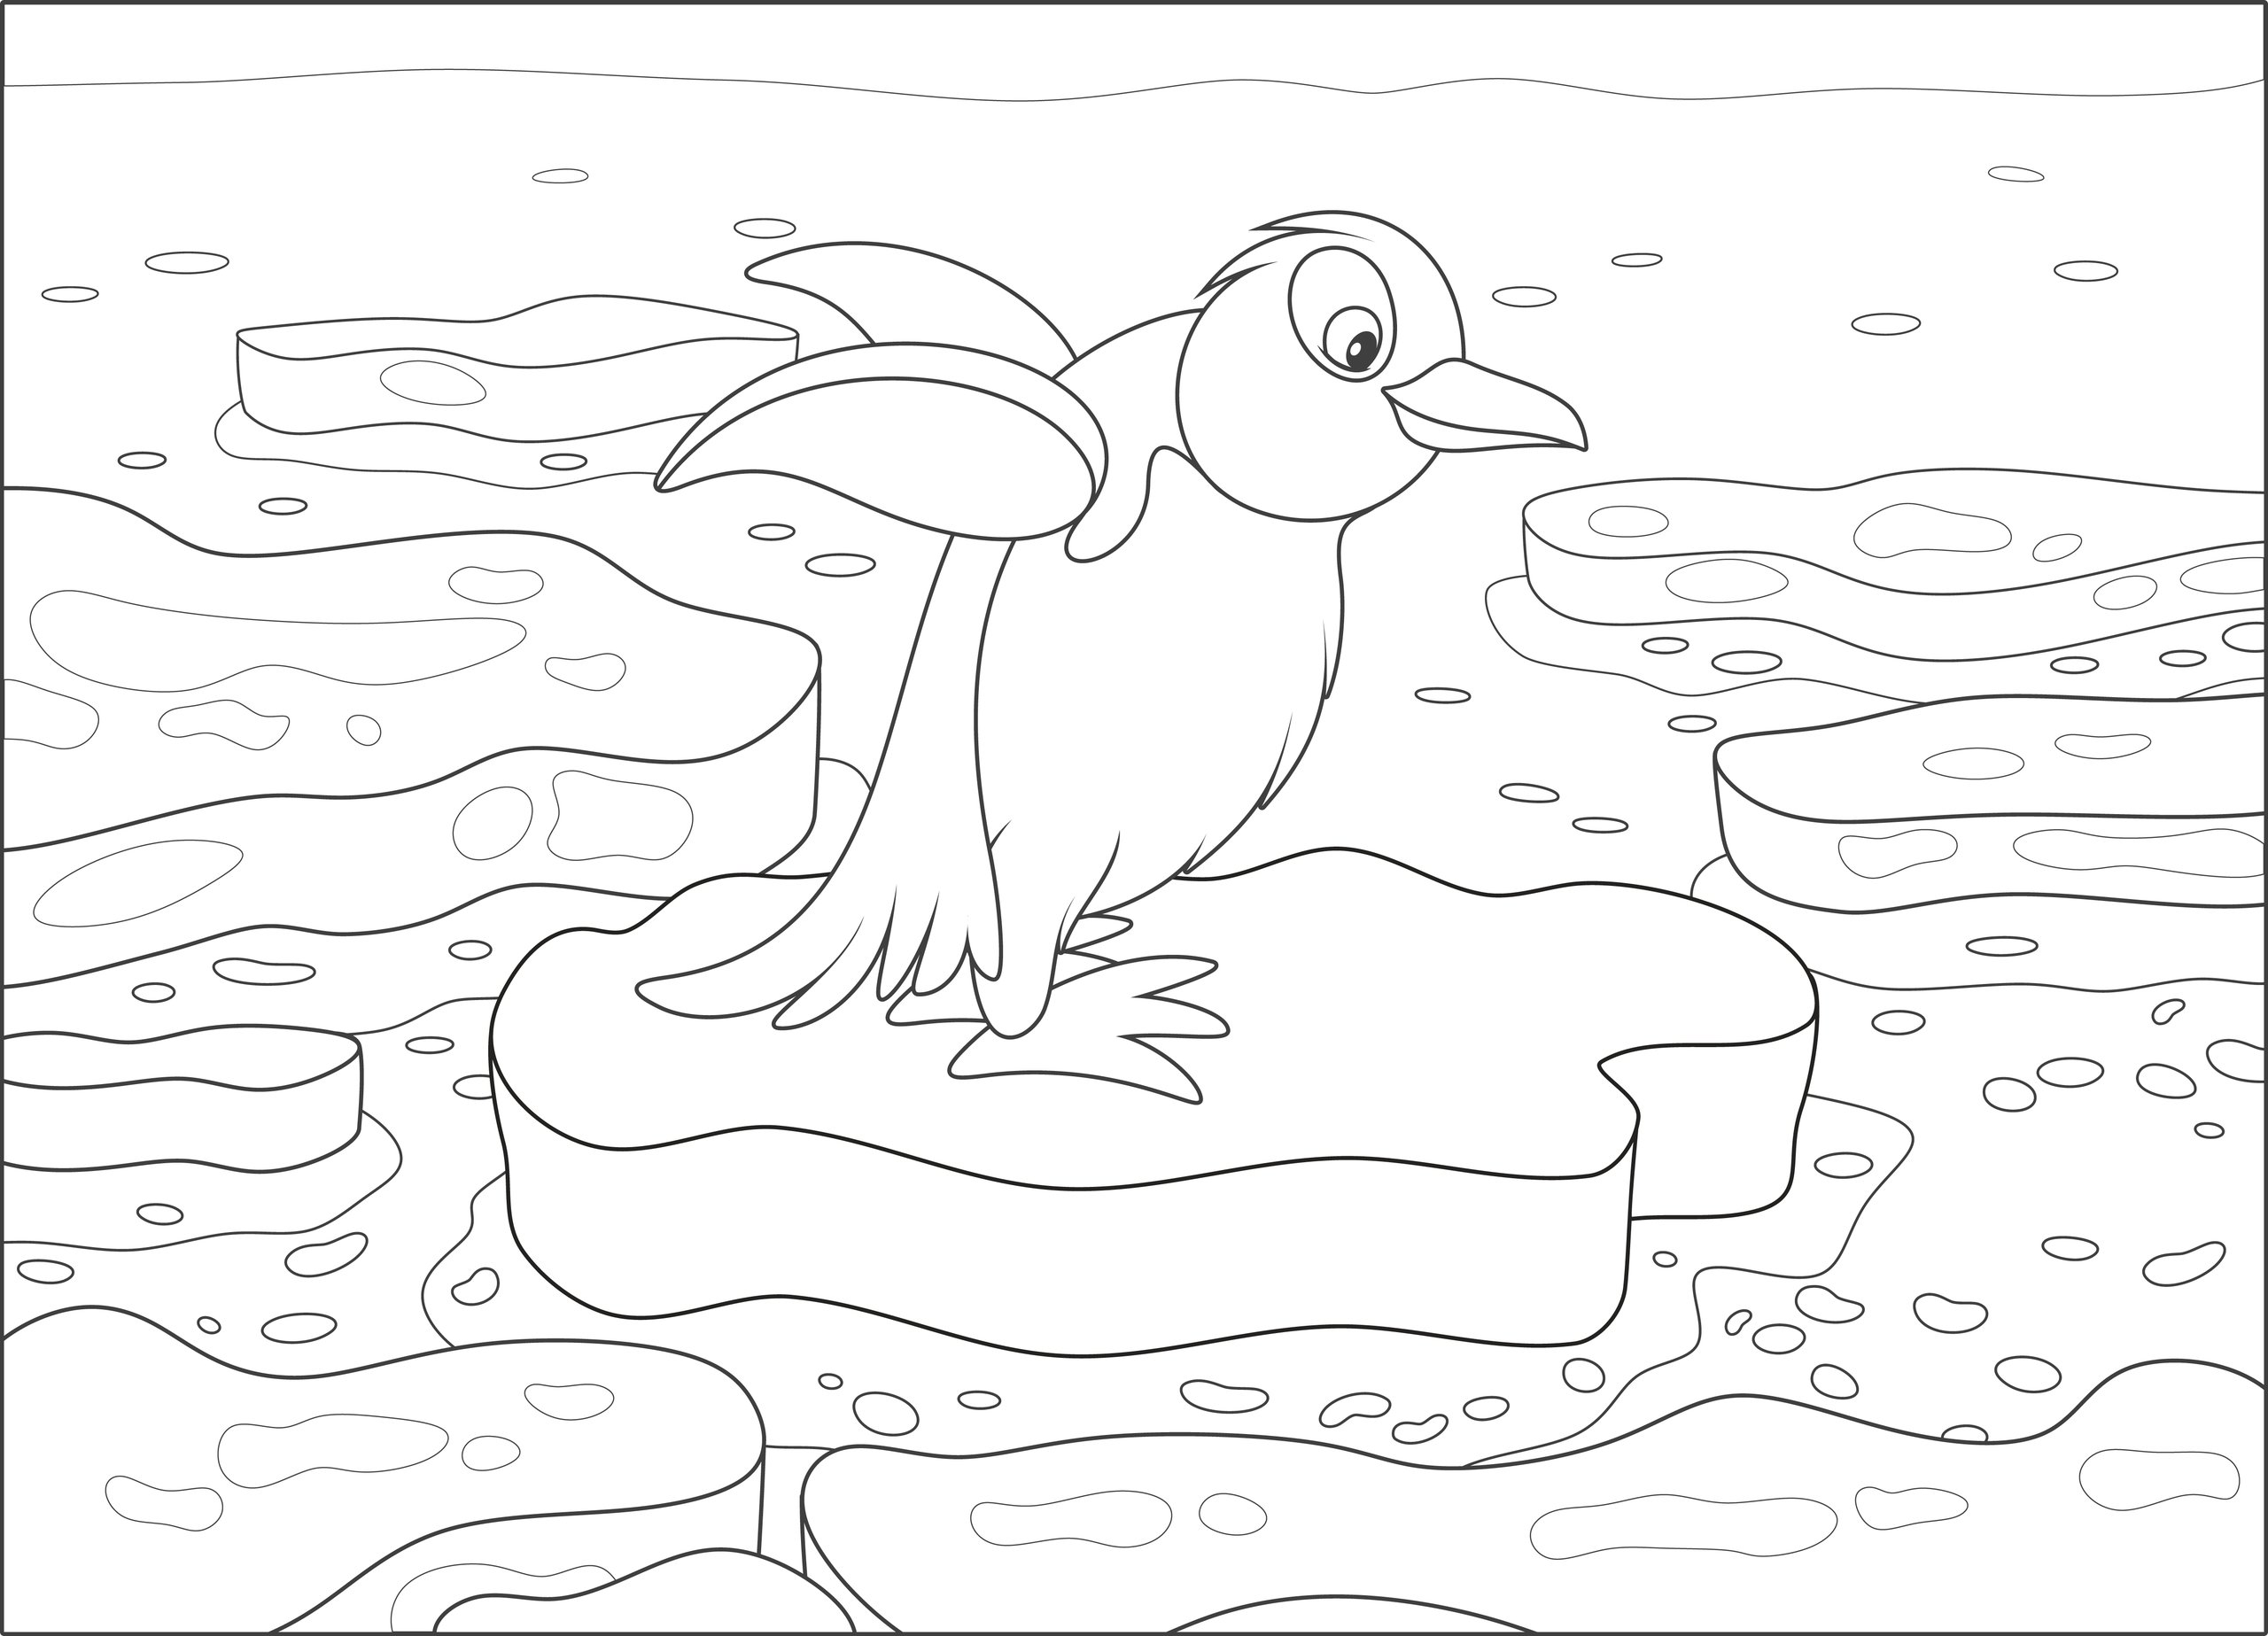 Penguin on an ice floe for kids #3